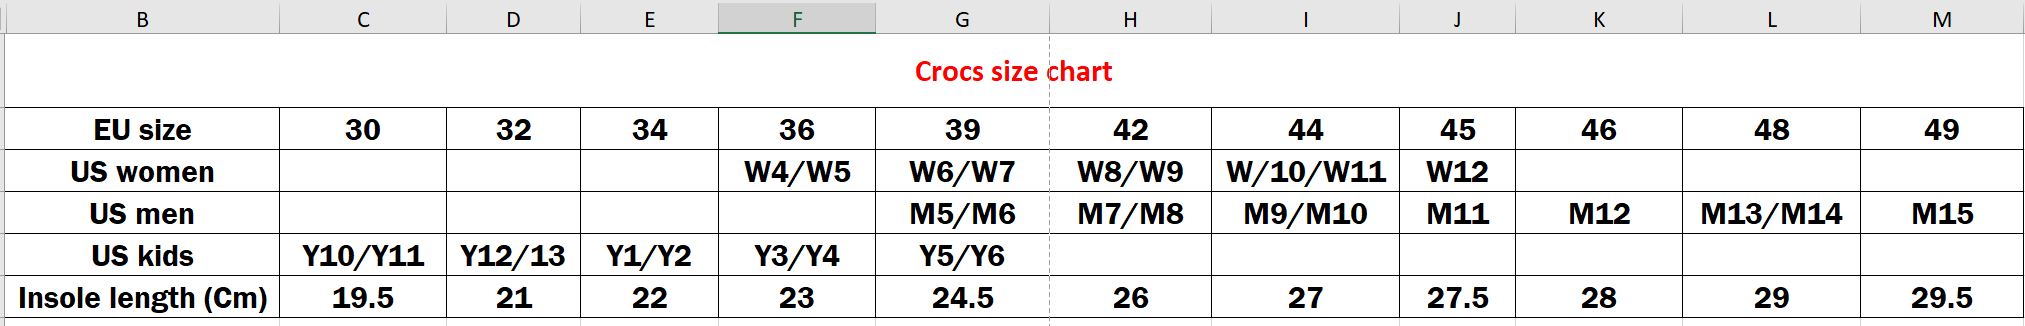 crocs size chart